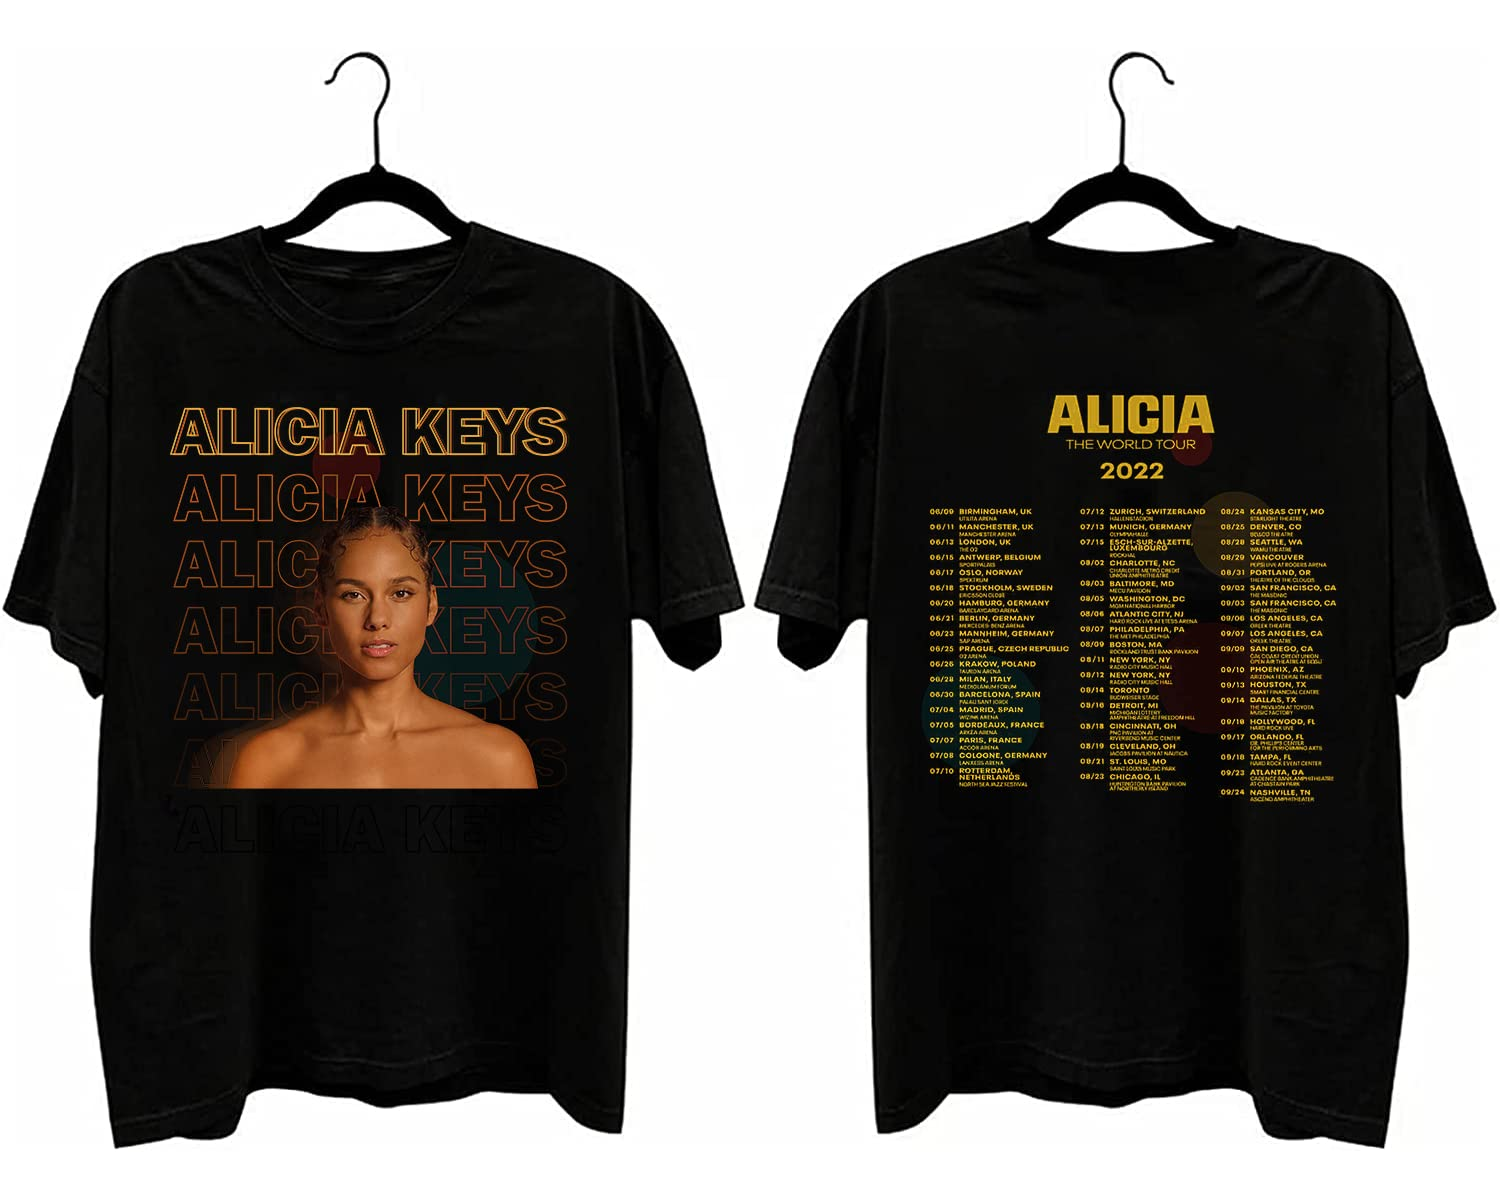 Alicia Keys The World Tour 2022 shirt, Music tshirt, gift for fan Alicia Keys shirt, Music Tour 2022 tshirt, hoodie, sweatshirt, tanktop